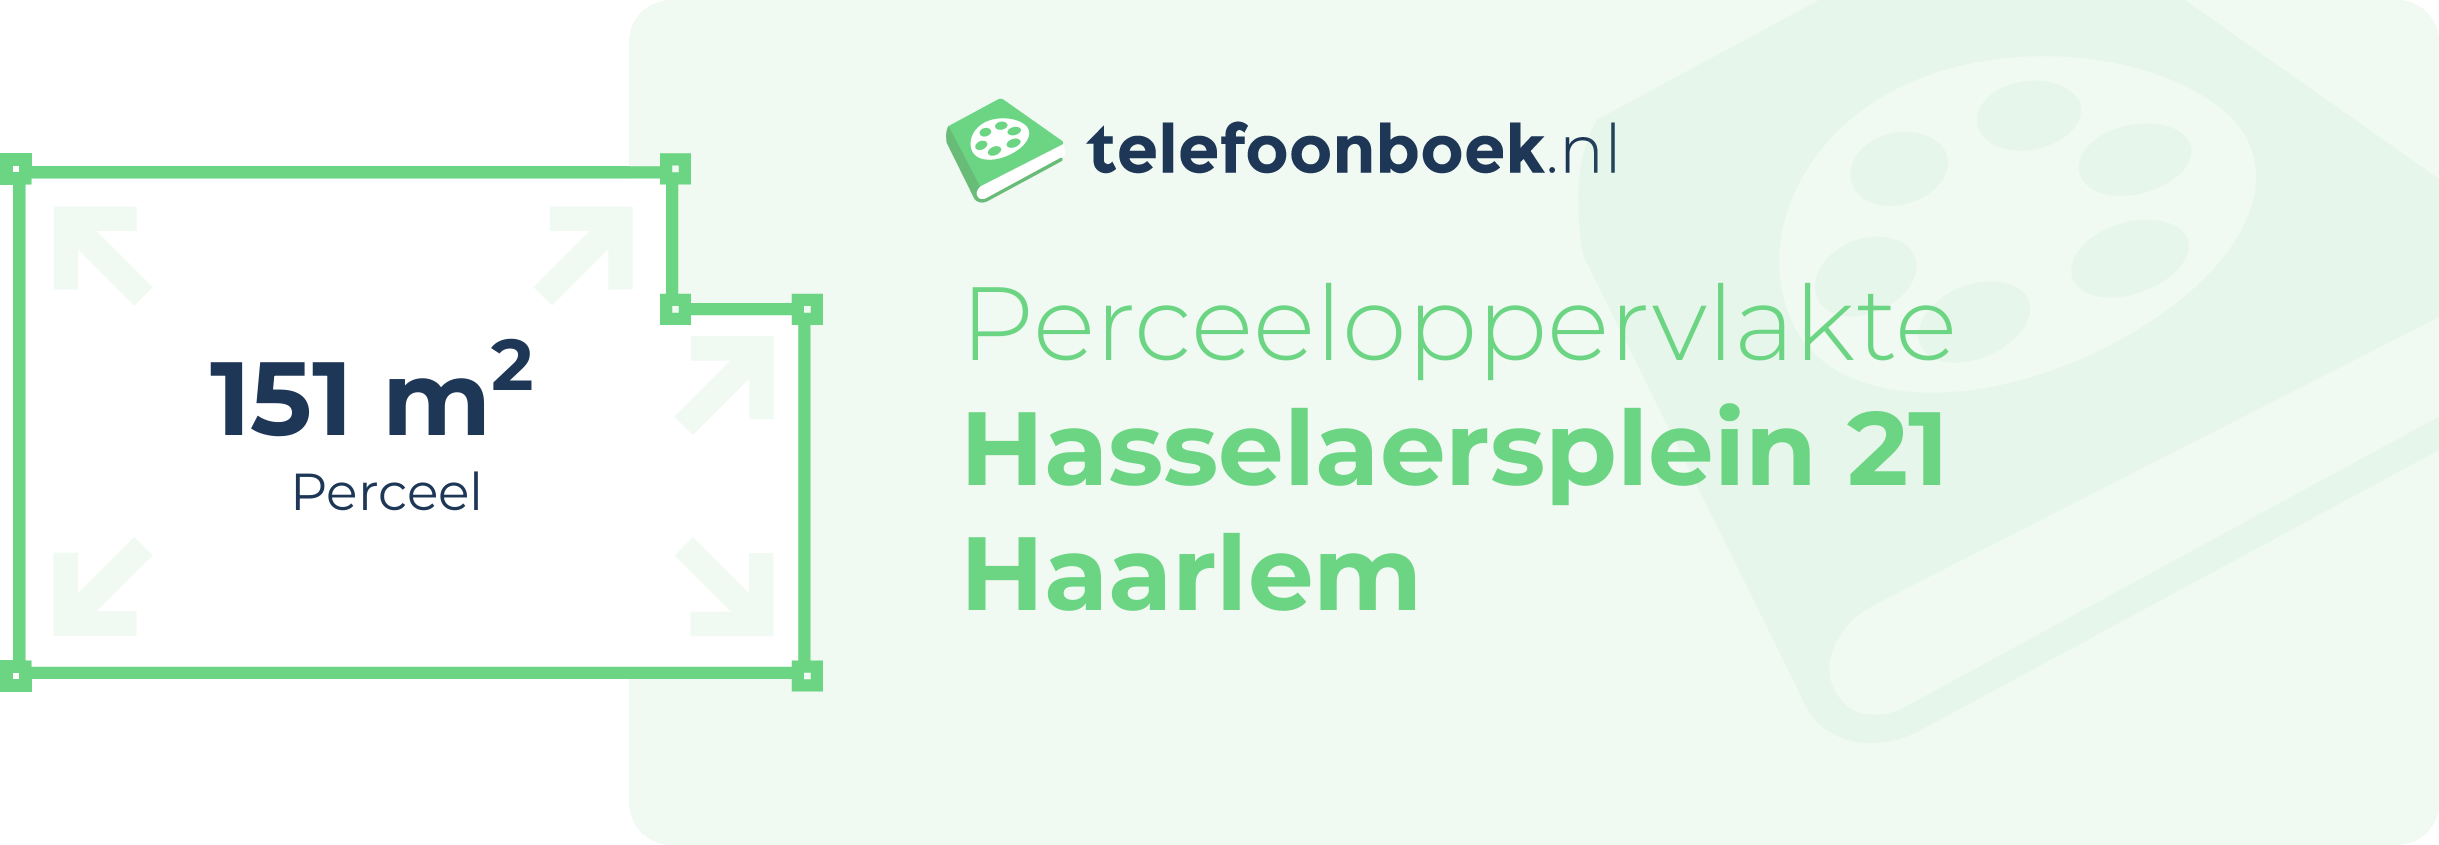 Perceeloppervlakte Hasselaersplein 21 Haarlem